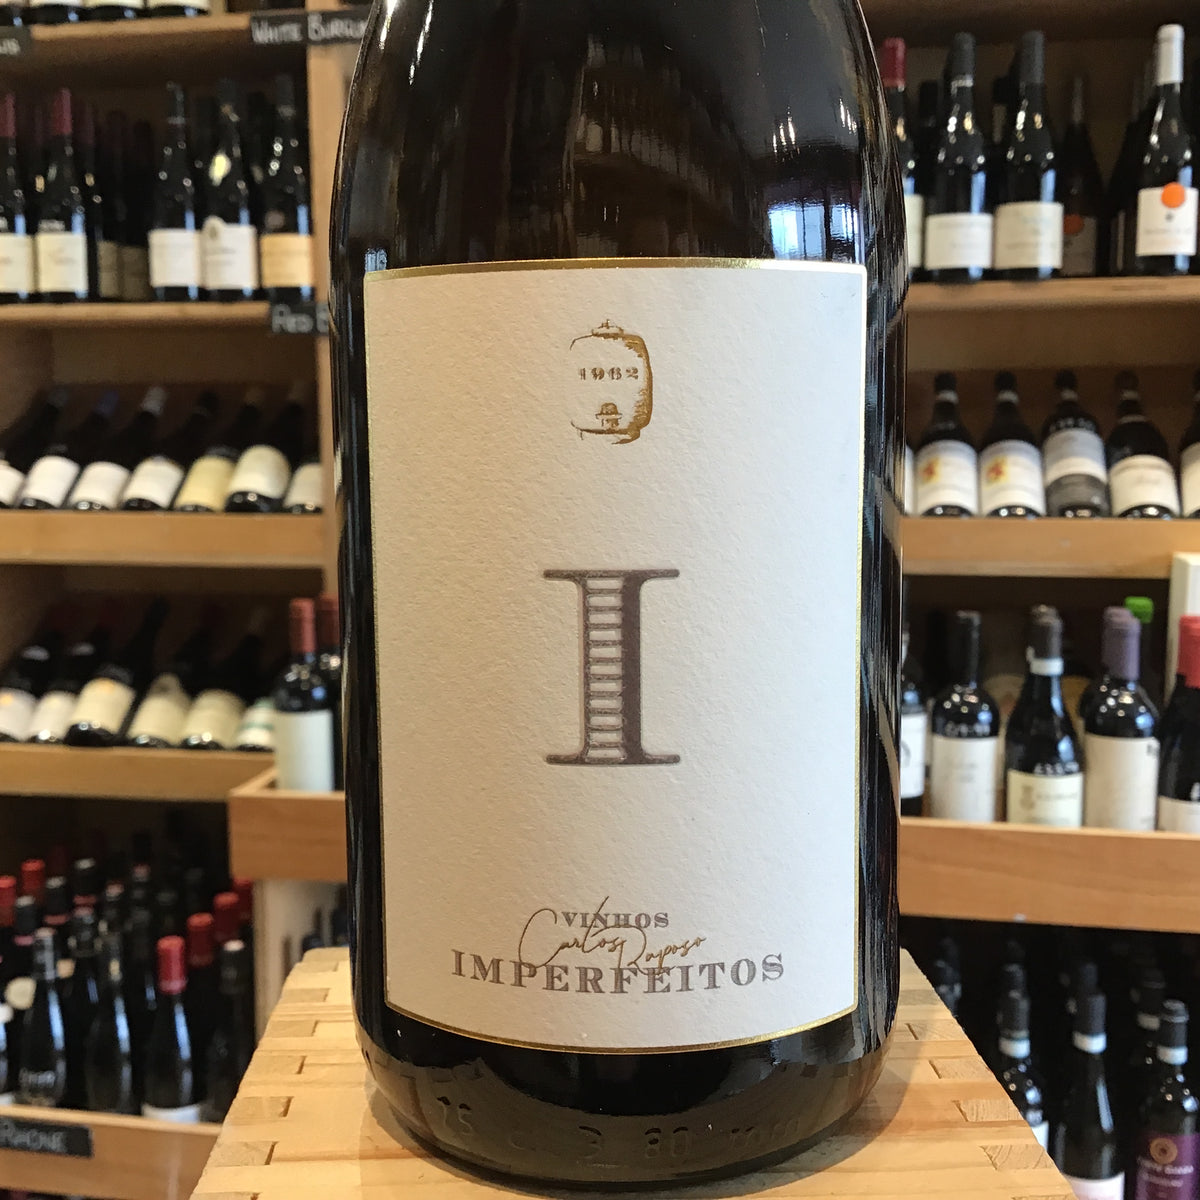 Vinhos Imperfeitos Imperfeito 2018 - Butlers Wine Cellar Brighton